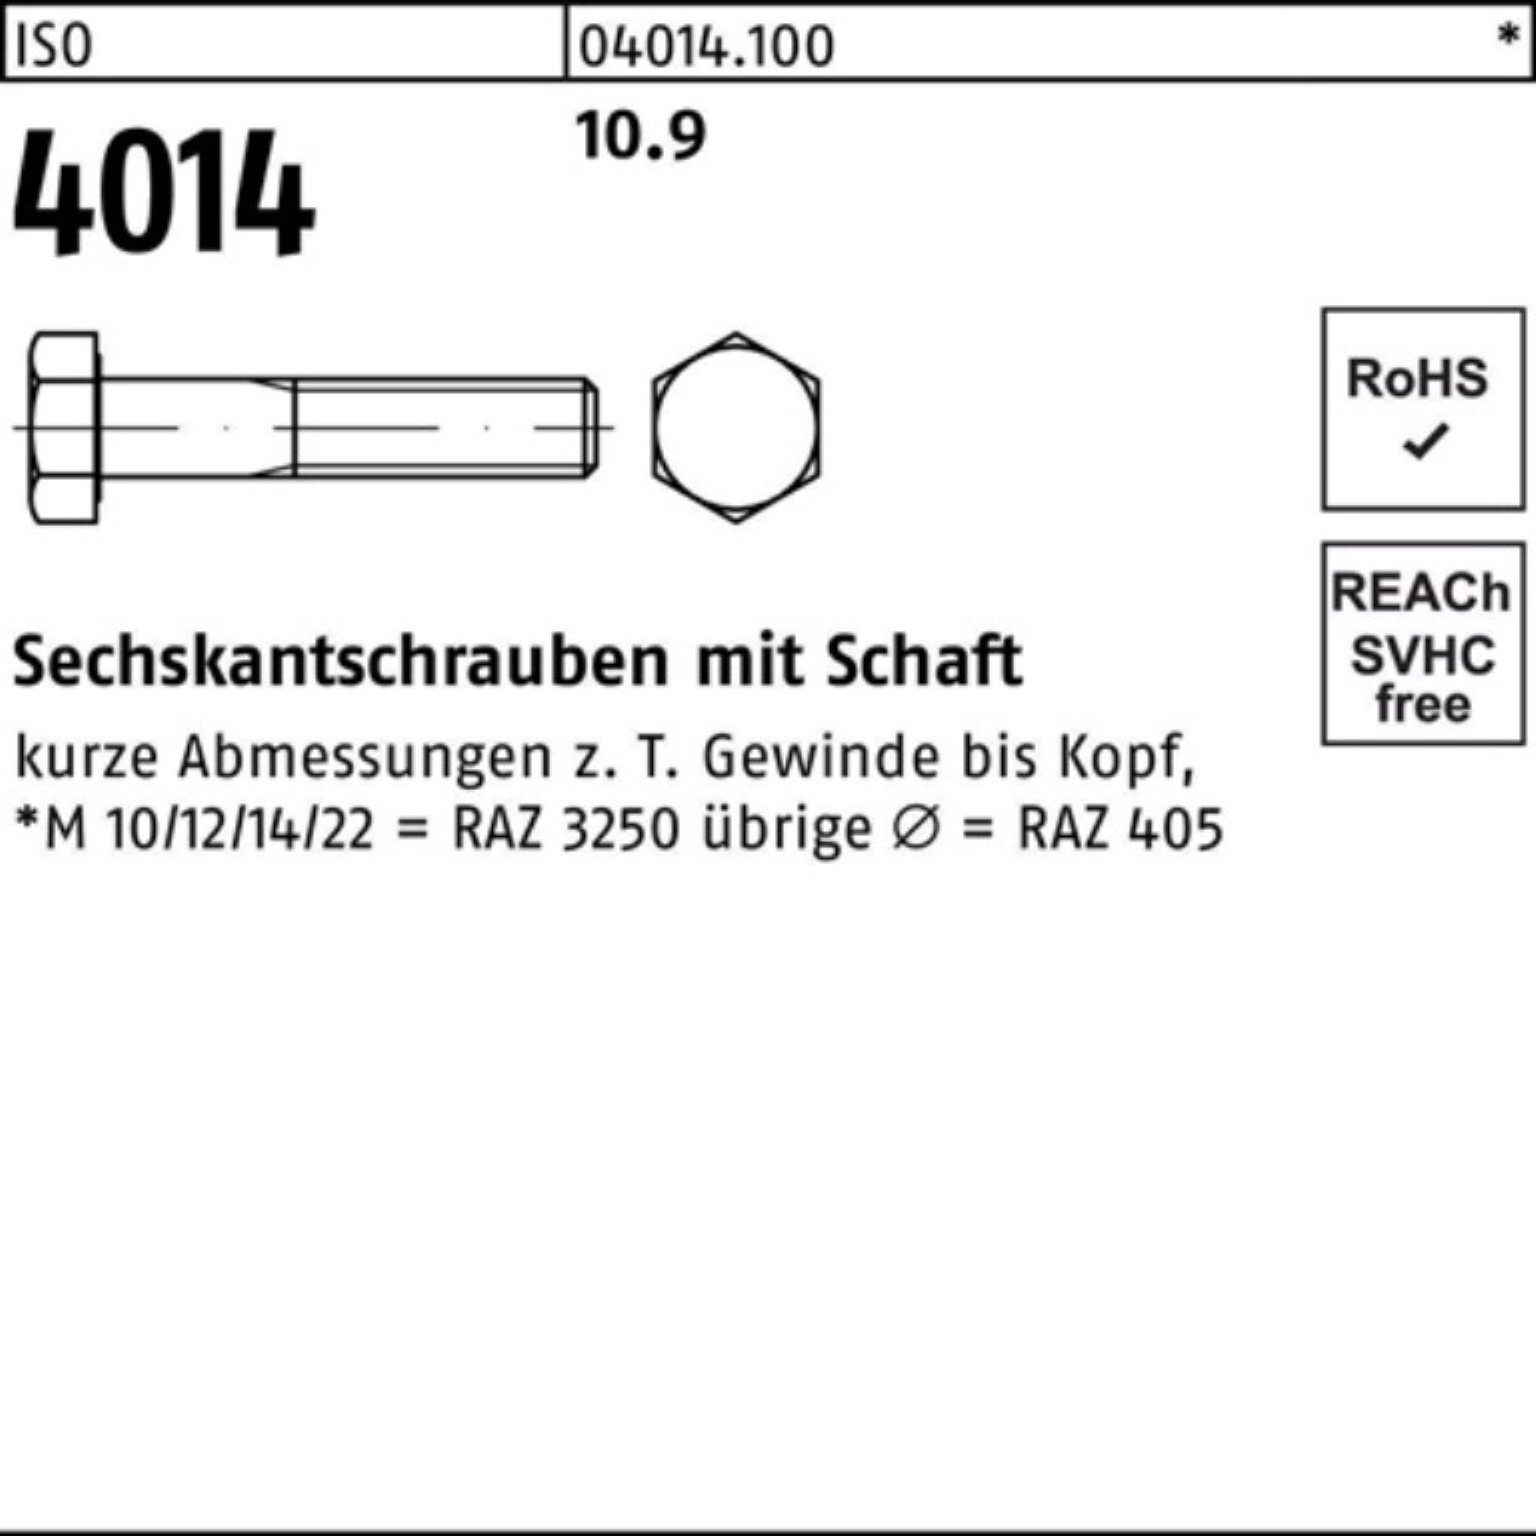 Sechskantschraube Bufab IS Schaft 10.9 M30x 4014 Pack 1 Sechskantschraube 340 100er ISO Stück